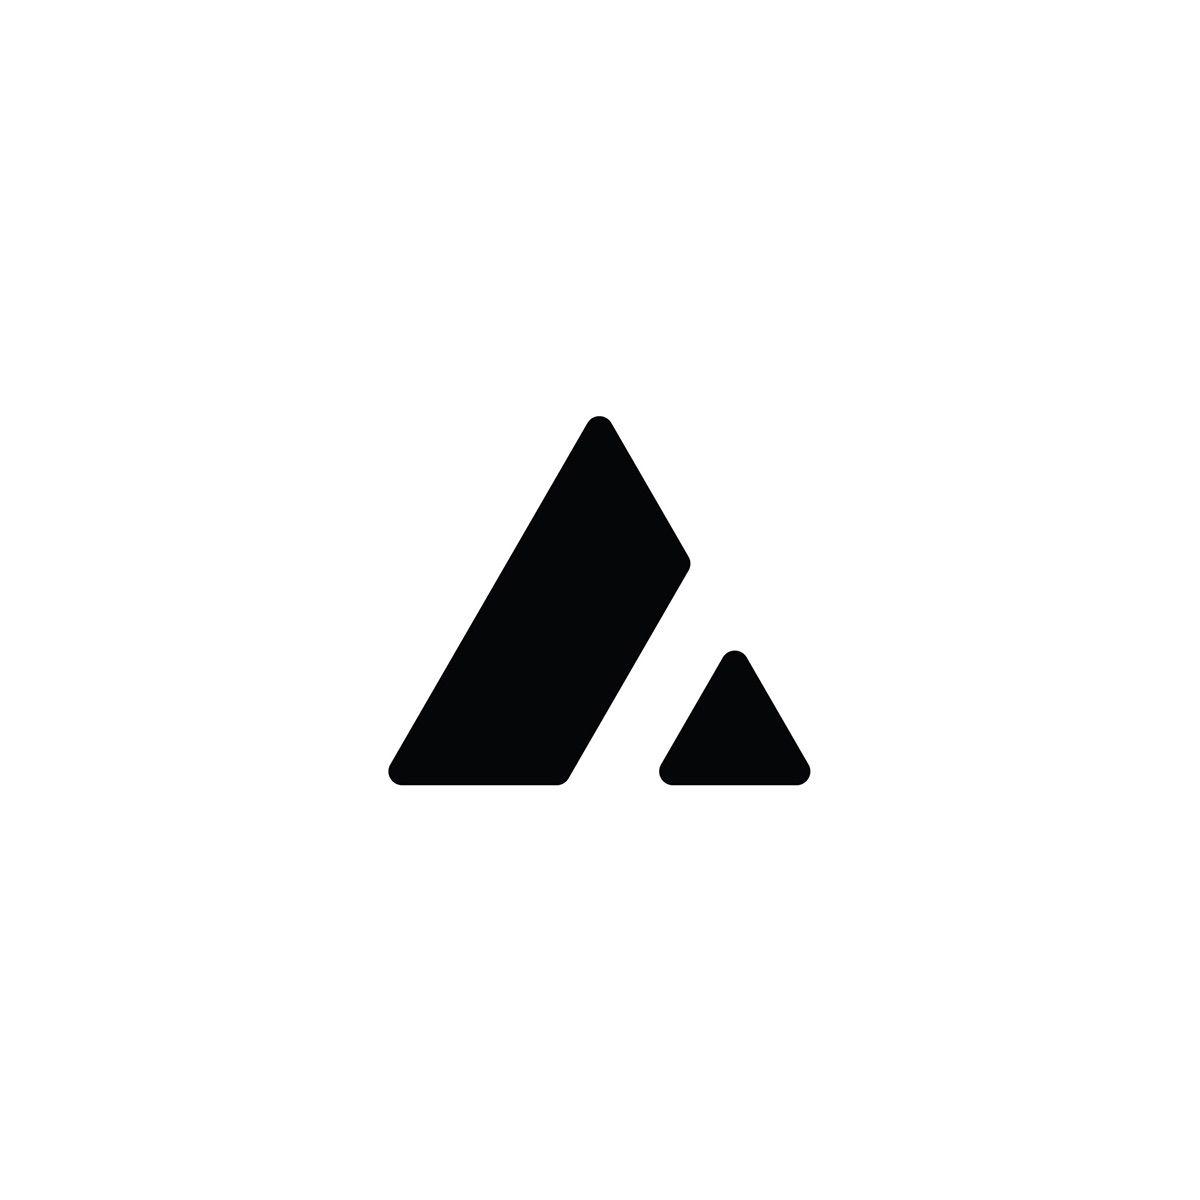 AZ Logo - A-Z Logo Project on Behance